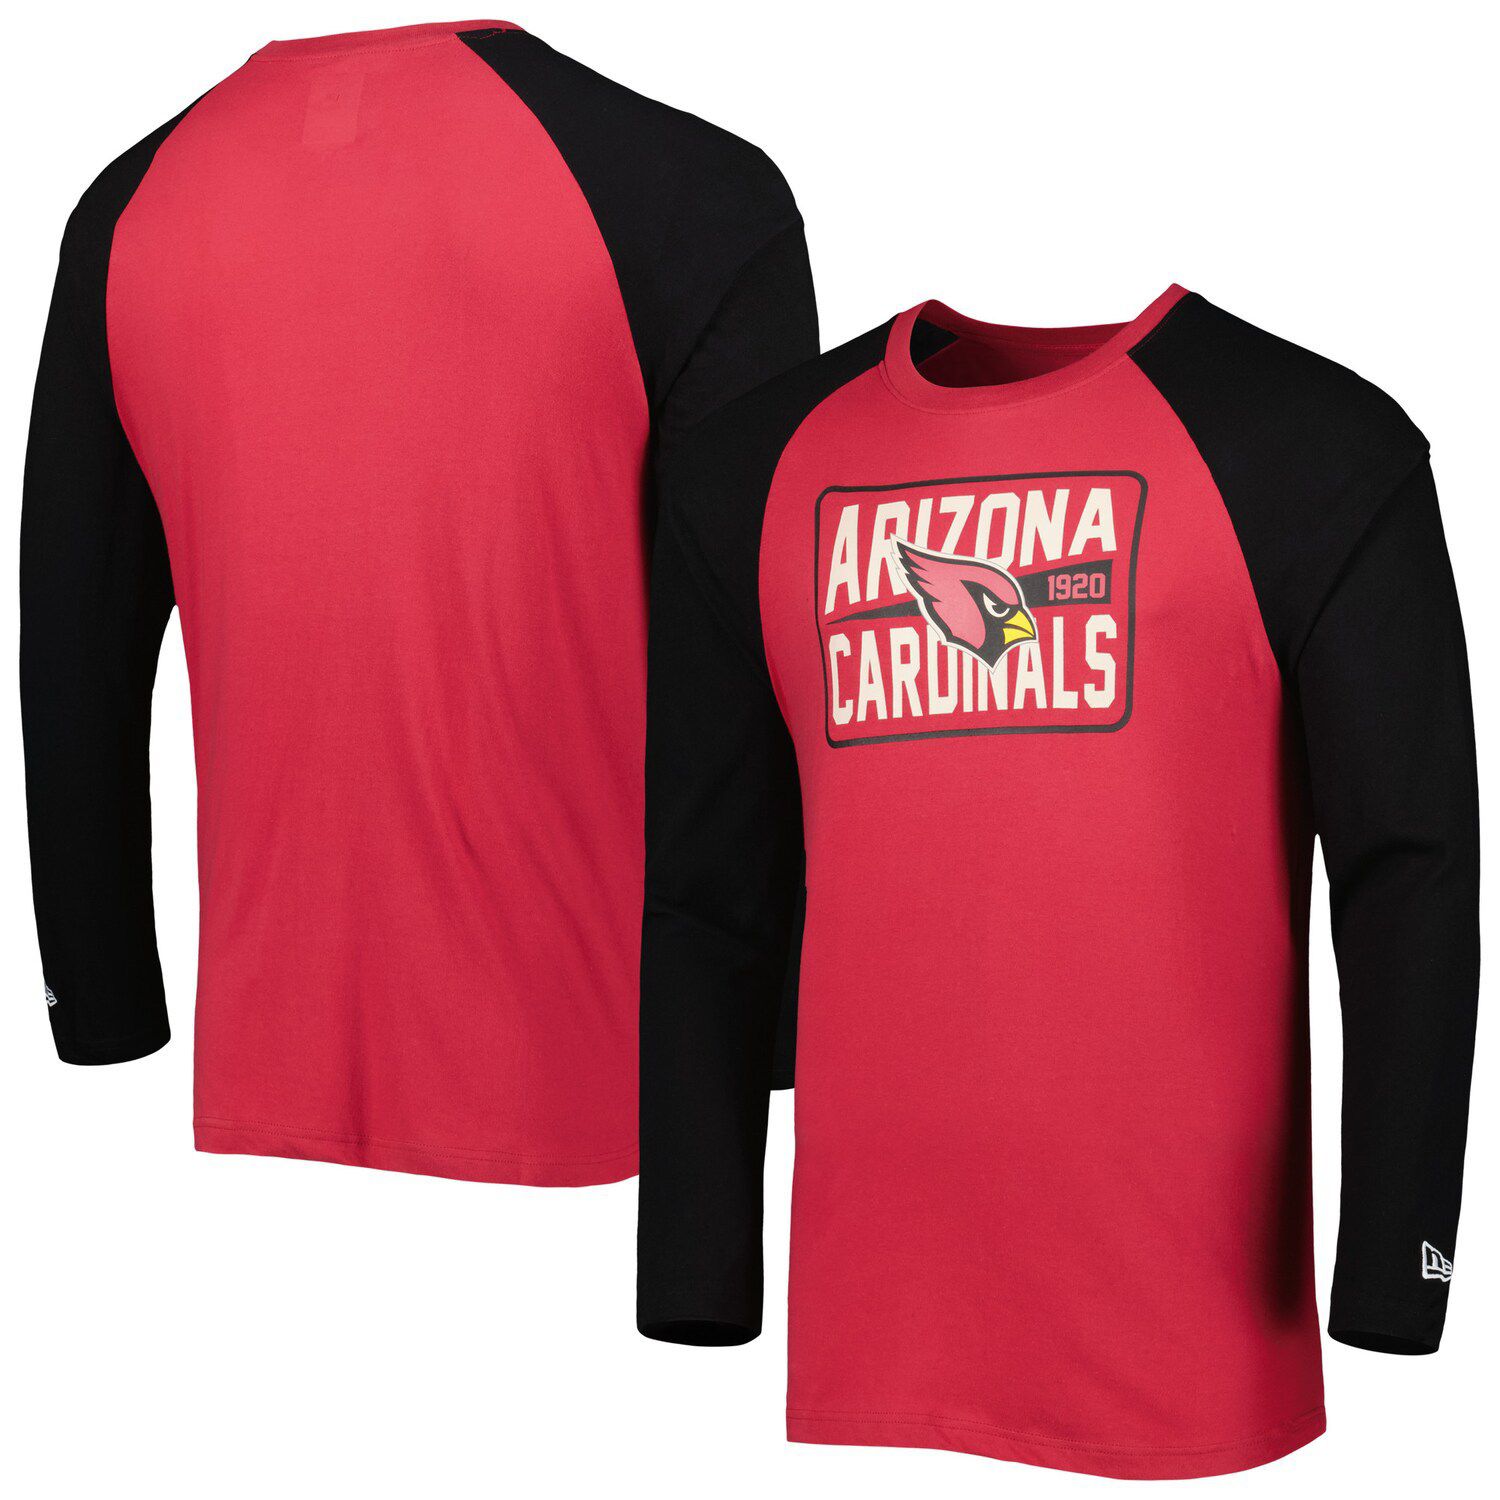 Women's New Era Cardinal Arizona Cardinals Raglan Lace-Up T-Shirt Size: Extra Small